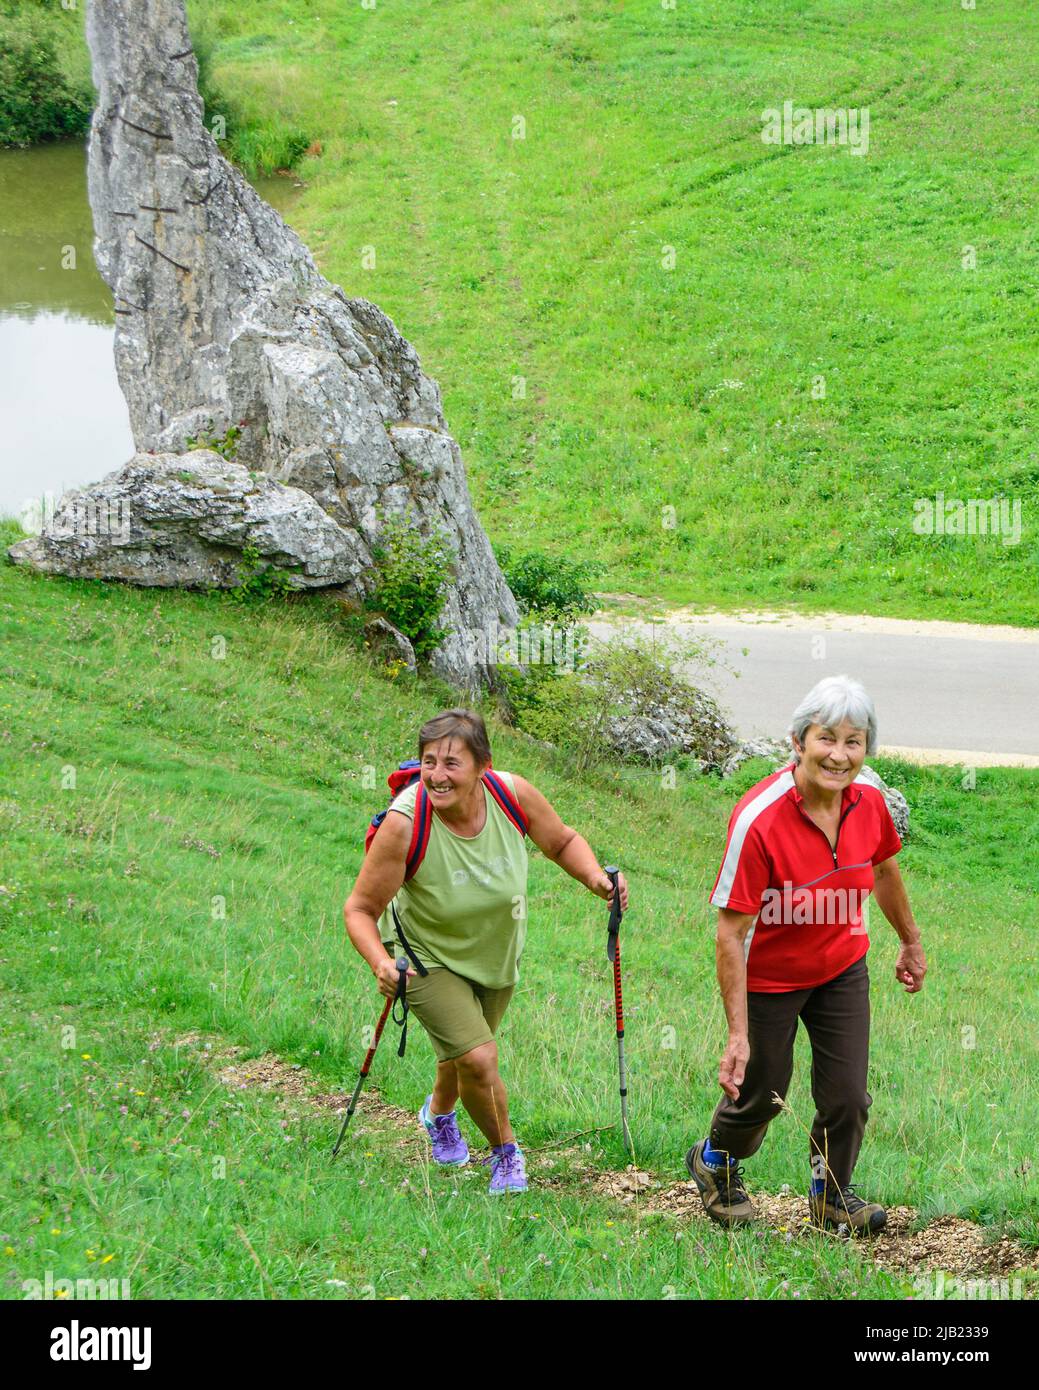 Good-humoured seniors hiking in idyllic nature Stock Photo